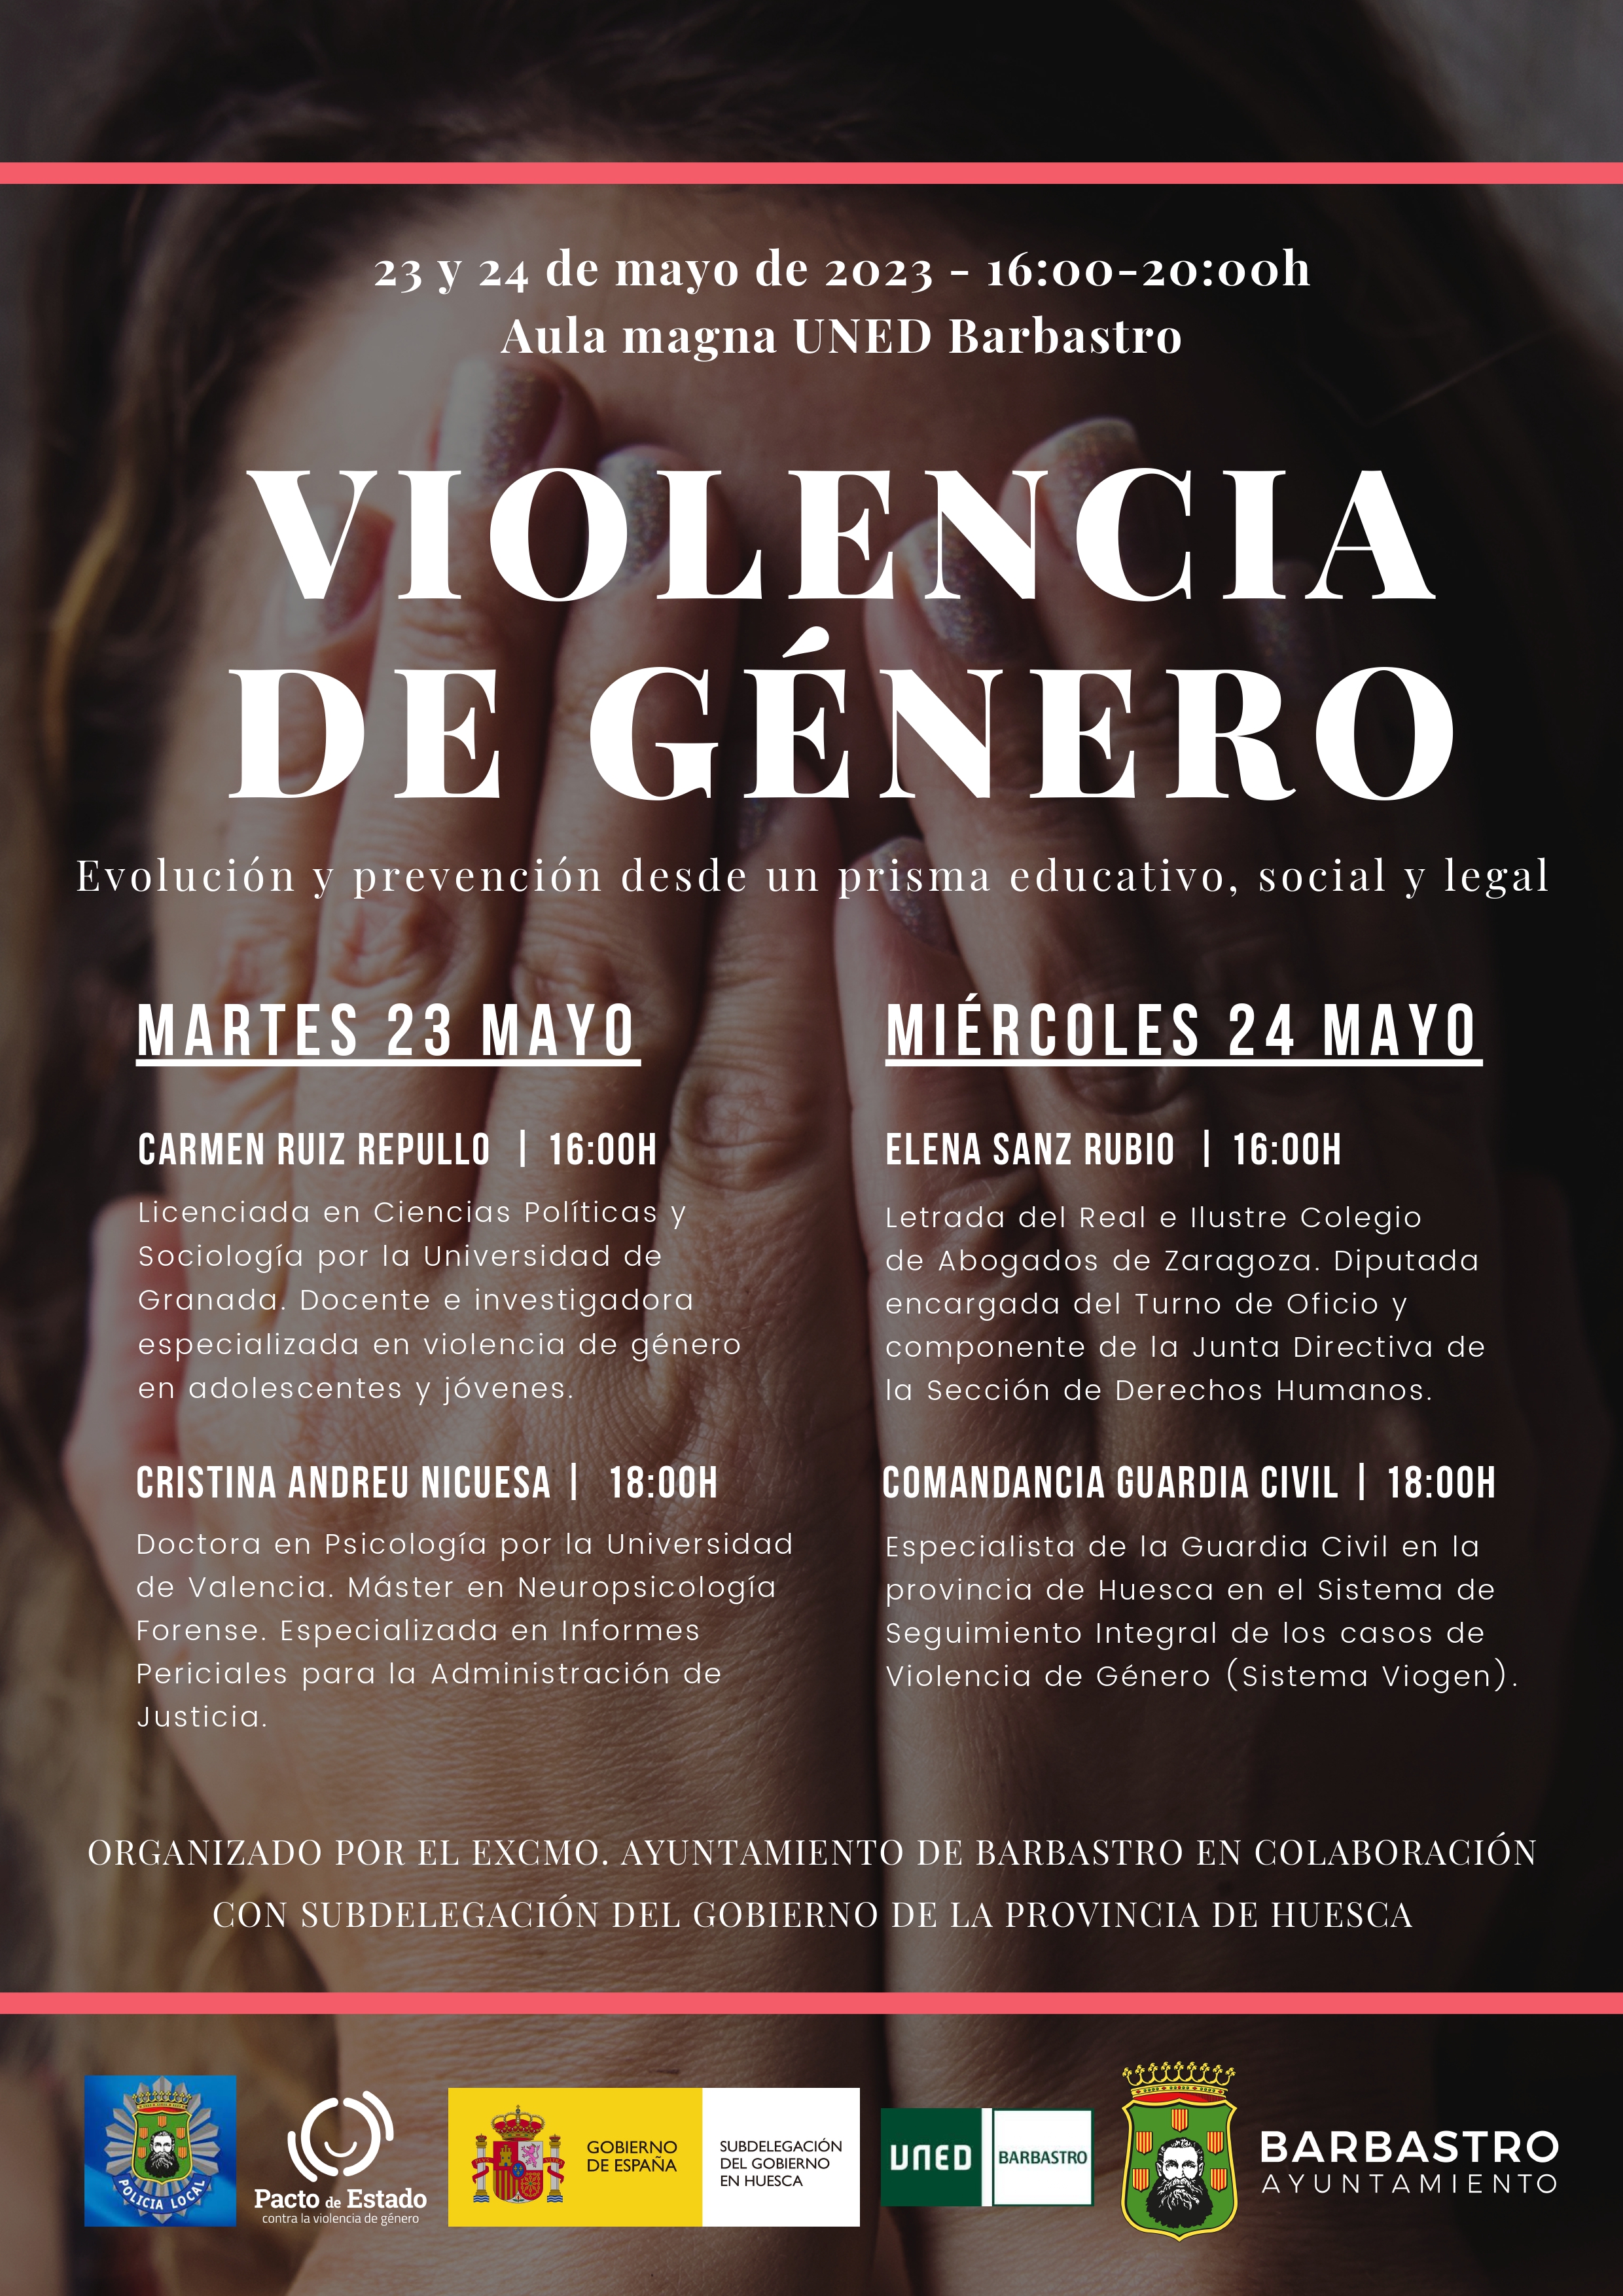 Barbastro acoge las Jornadas sobre Violencia de Género los días 23 y 24 de mayo